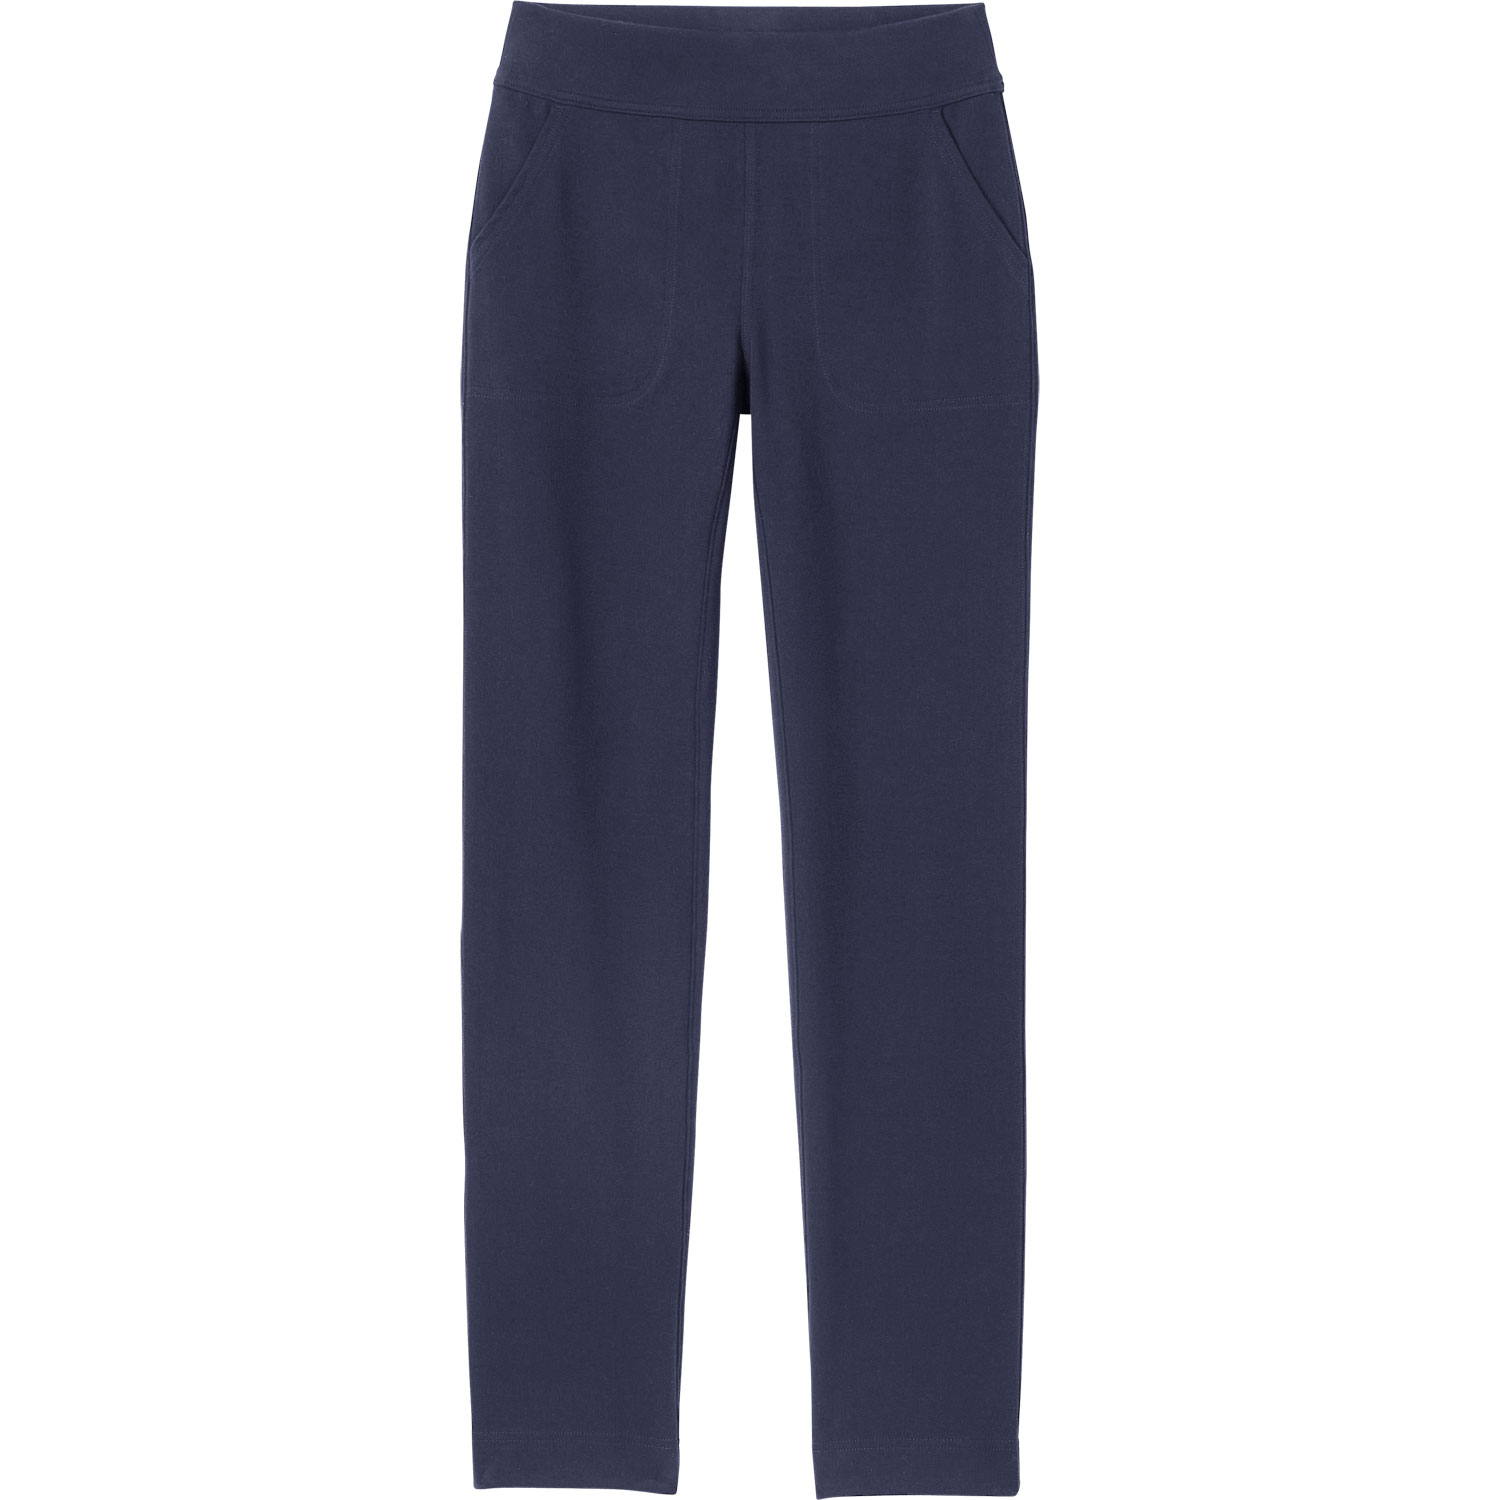 Cotton Capris For Women - Half Pants Pack Of 2 (purple & Navy Blue